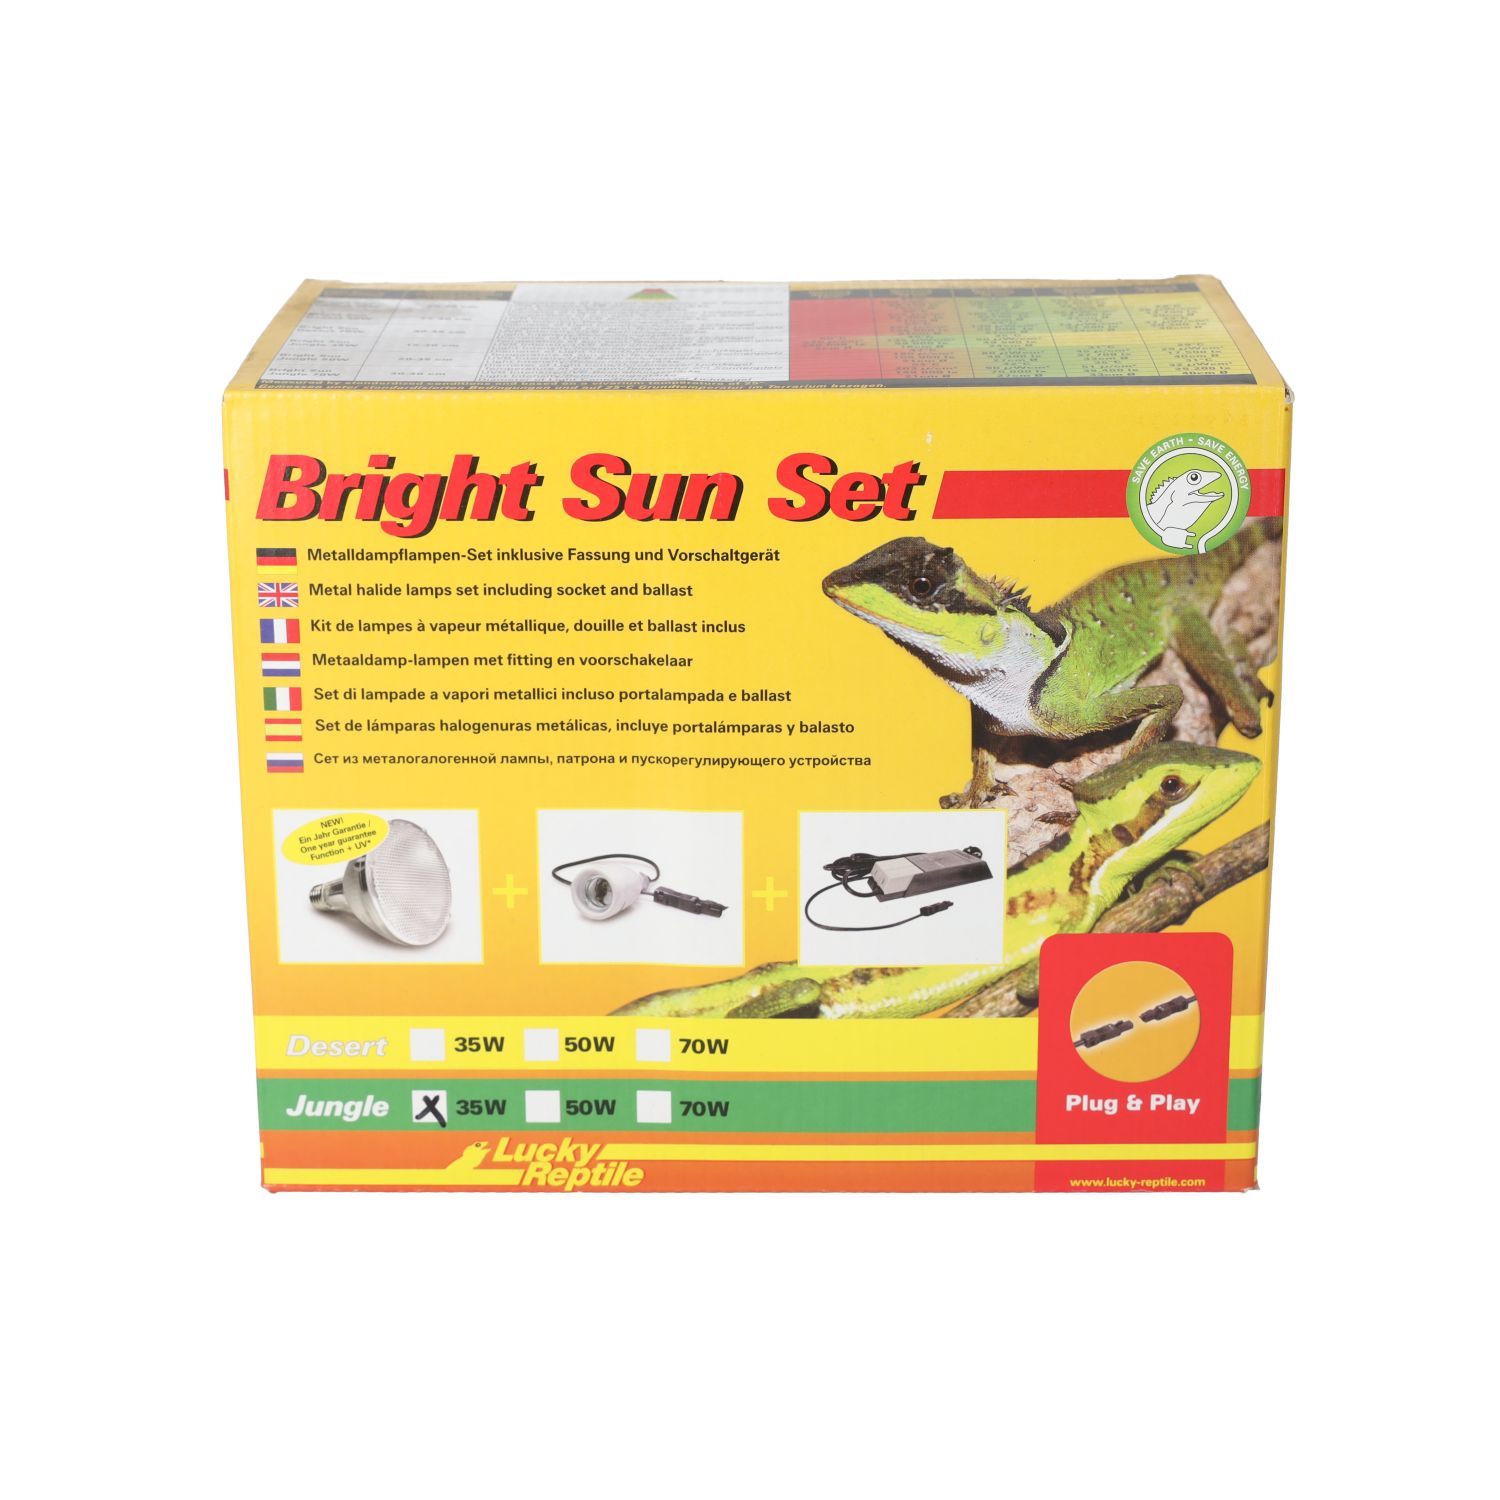 LR Bright Sun Evo SET Jungle 35W, BSS-J35